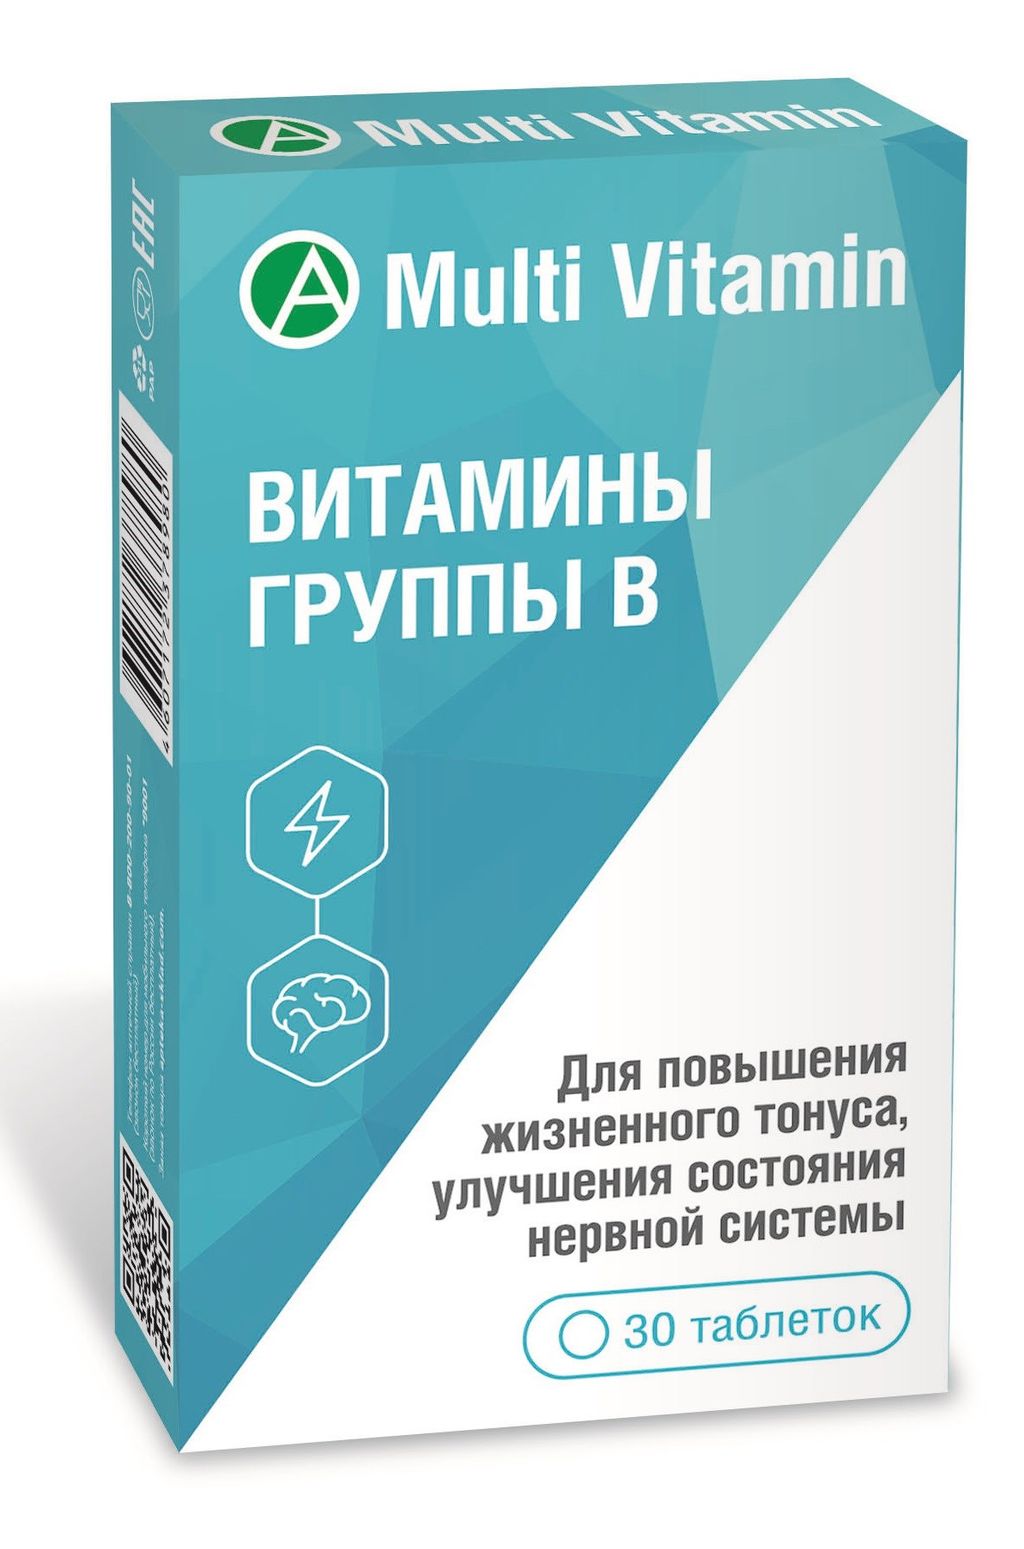 фото упаковки Multi Vitamin Витамины группы В